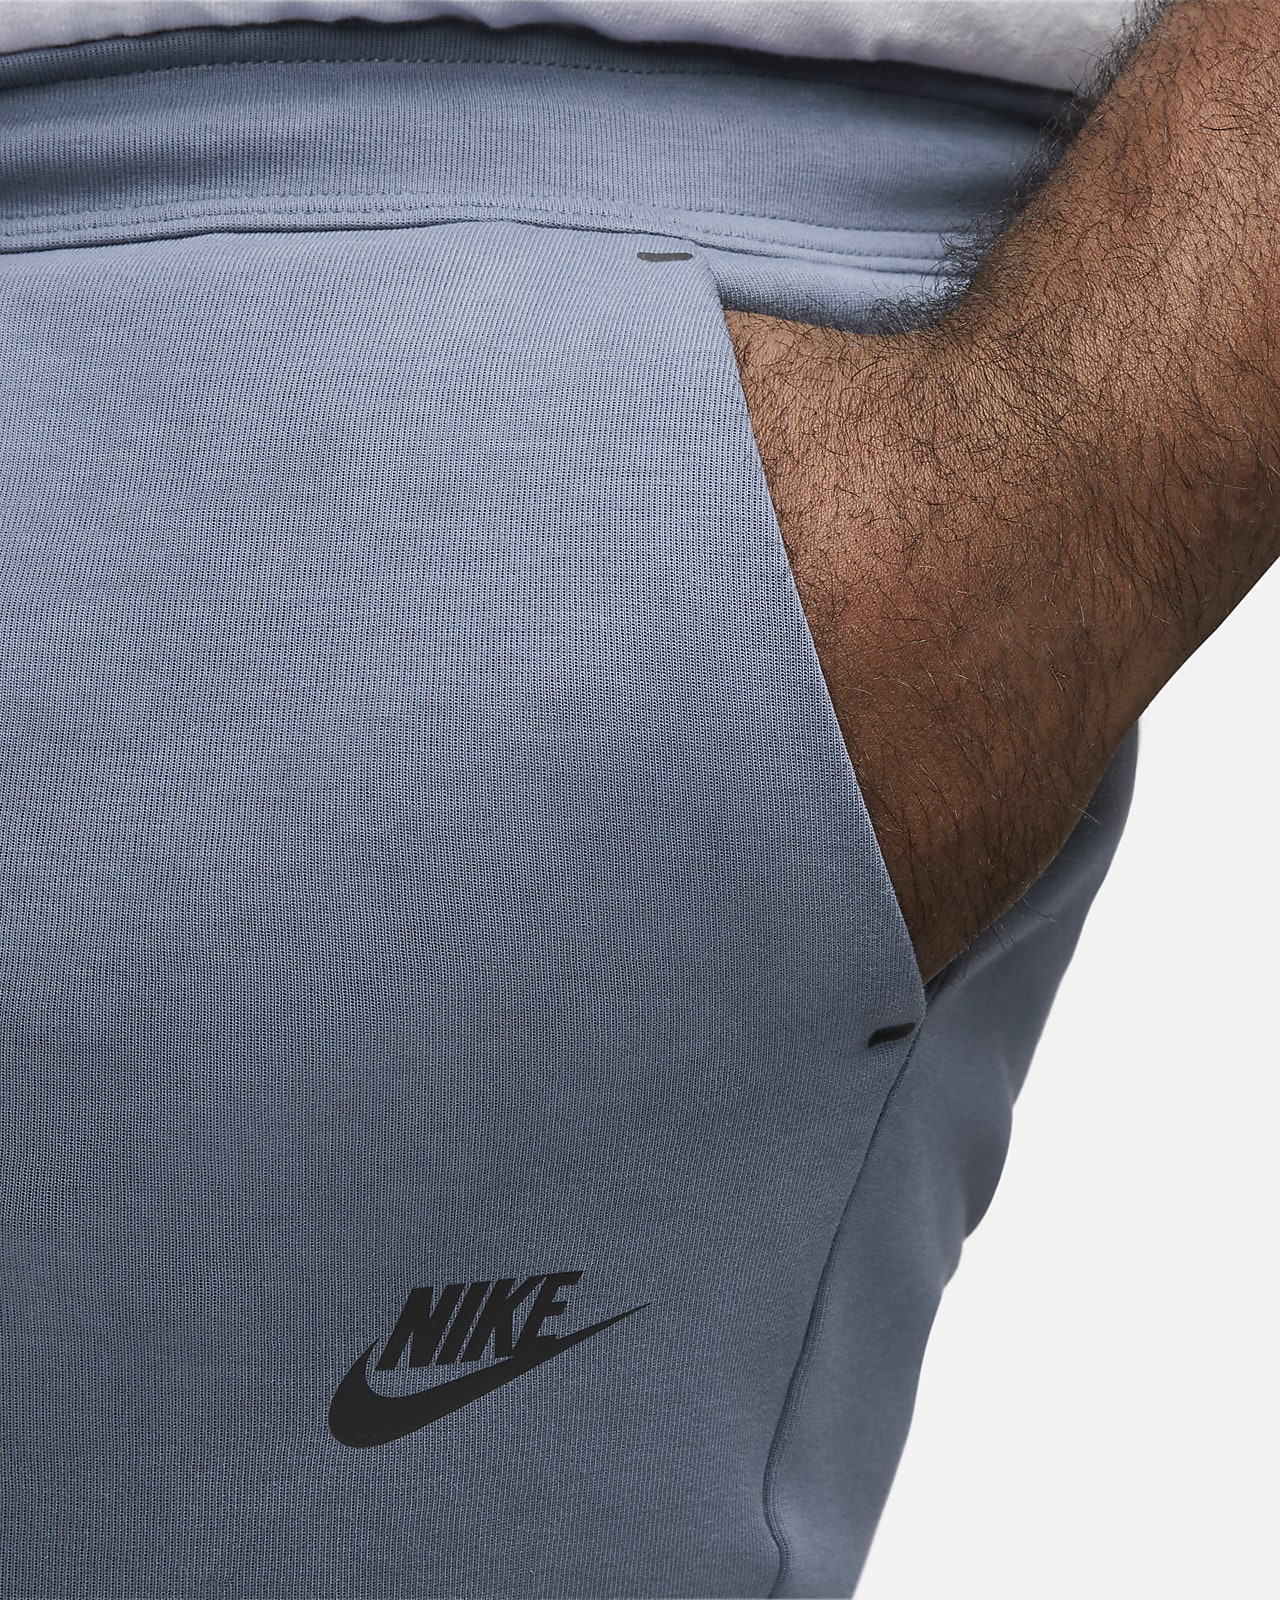 Nike Sportswear Fleece Men's Joggers. Nike.com